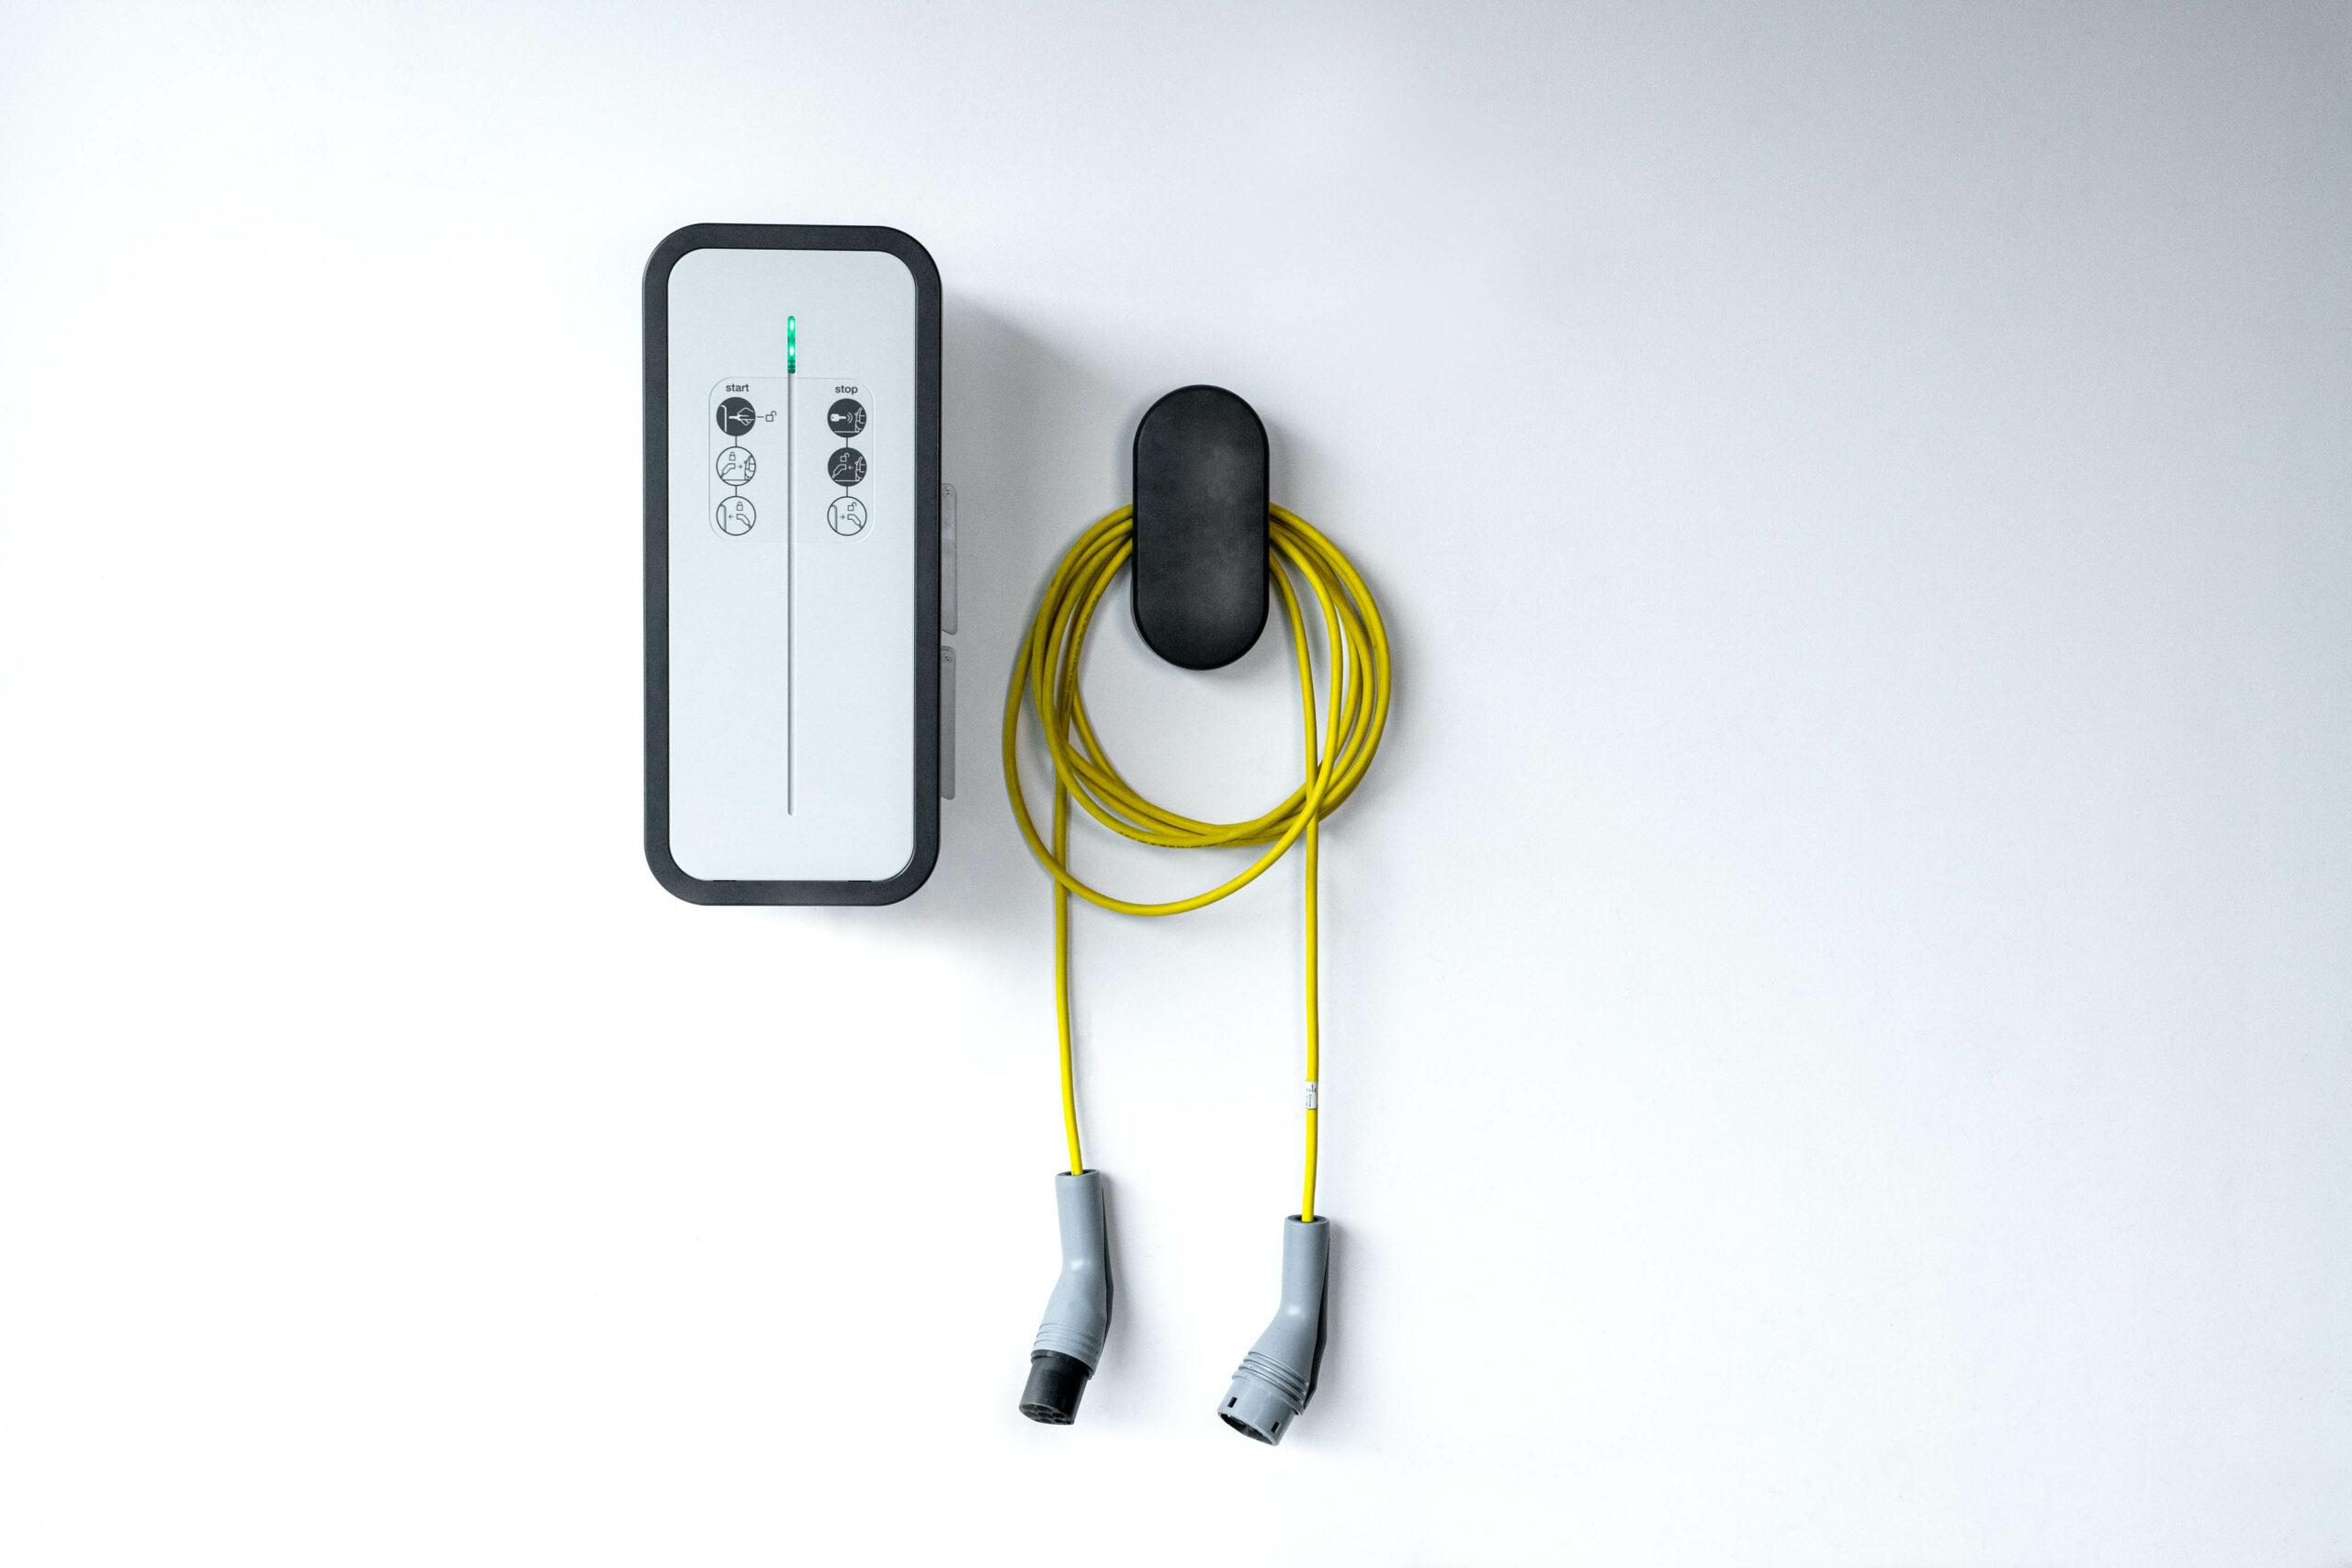 Borne de recharge véhicule électrique avec support de câble  SF ELEC FLEUREY SUR OUCHE Tel 06.01.00.66.19 Mail : contact@sf-elec.fr